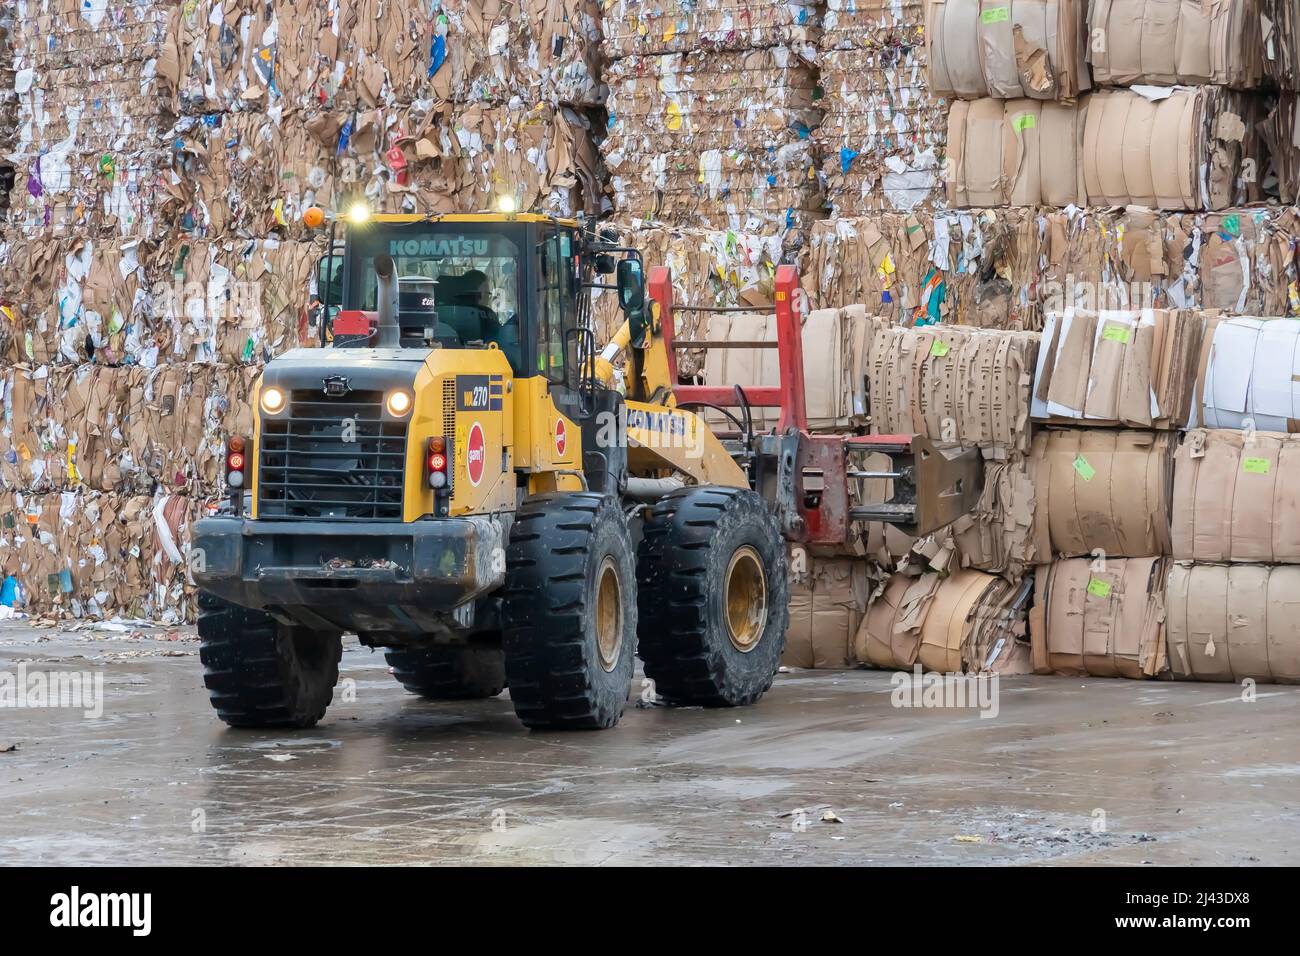 Macchinari pesanti che lavorano con carta riciclata in un impianto di riciclaggio industriale. Foto Stock